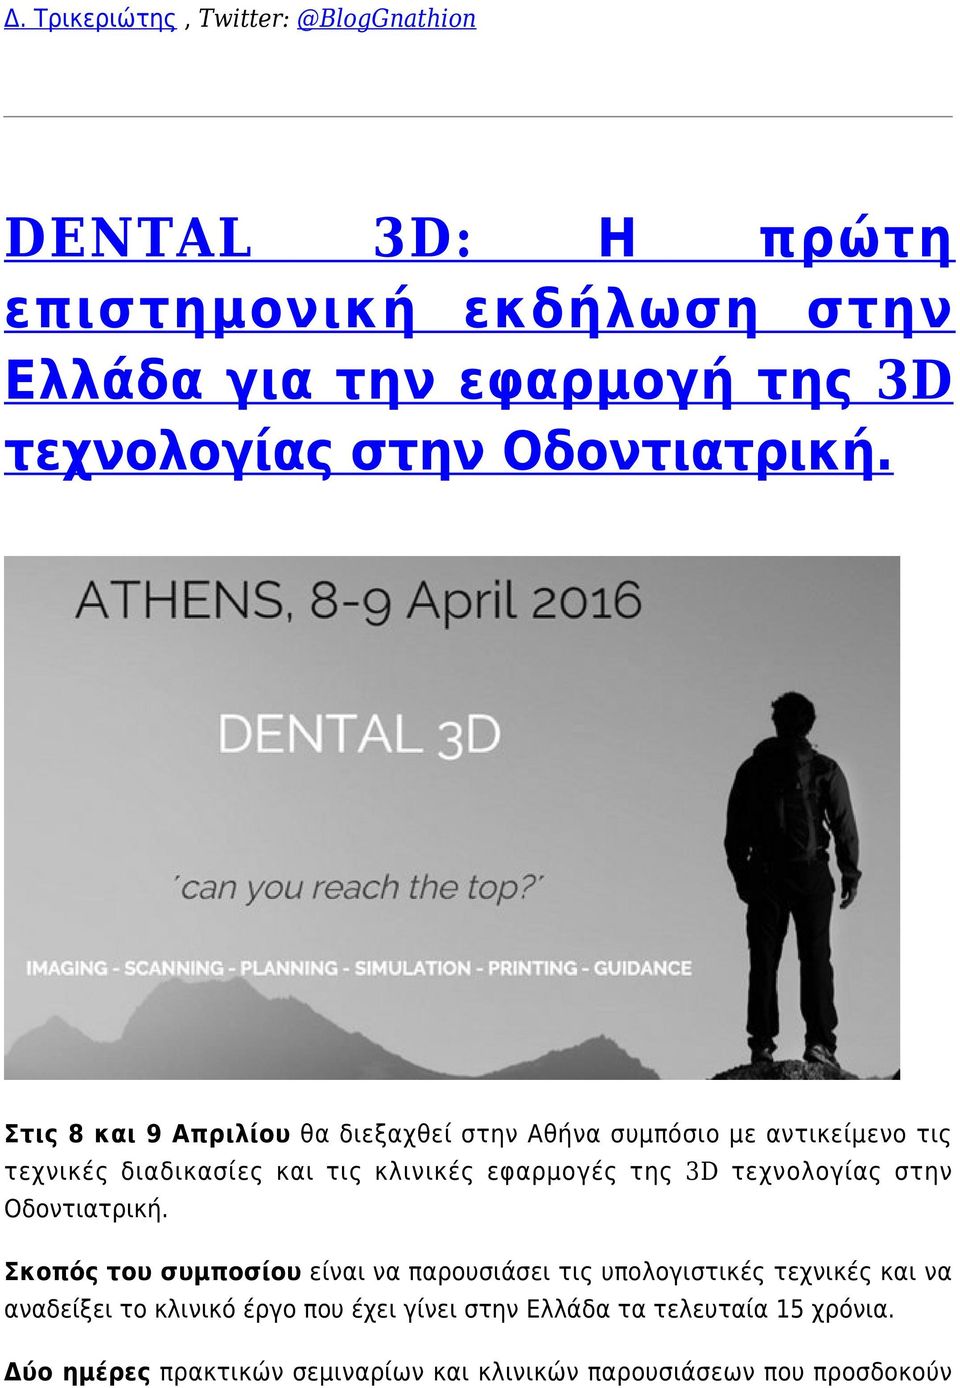 Στις 8 και 9 Απριλίου θα διεξαχθεί στην Αθήνα συμπόσιο με αντικείμενο τις τεχνικές διαδικασίες και τις κλινικές εφαρμογές της 3D